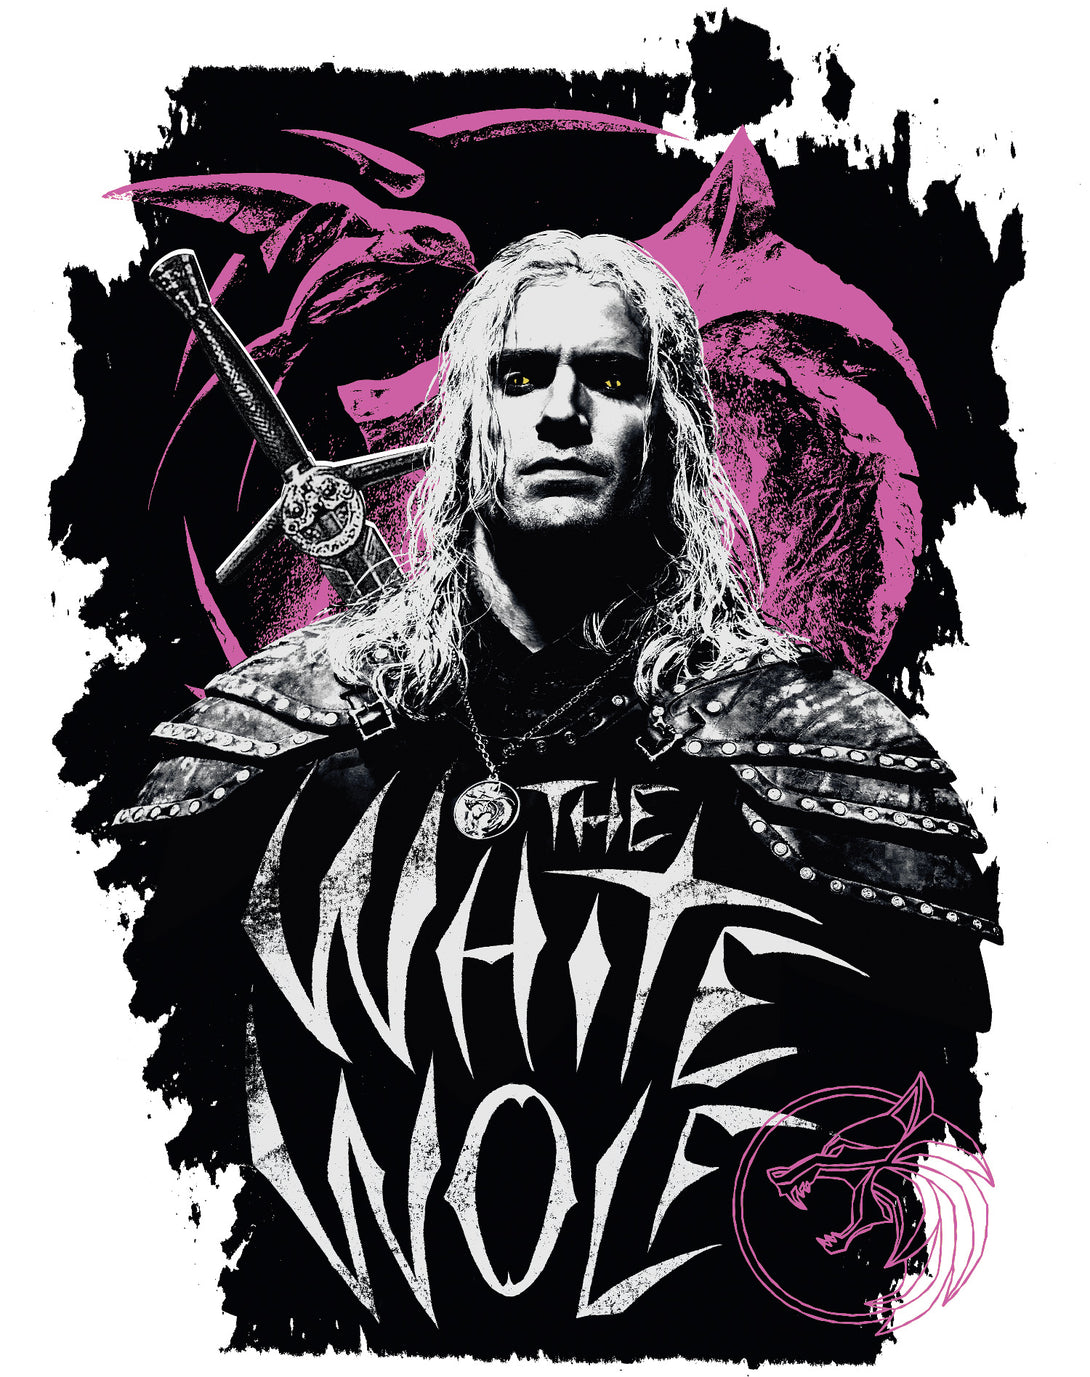 The Witcher Geralt Splash White Wolf Official Men's T-Shirt White - Urban Species Design Close Up